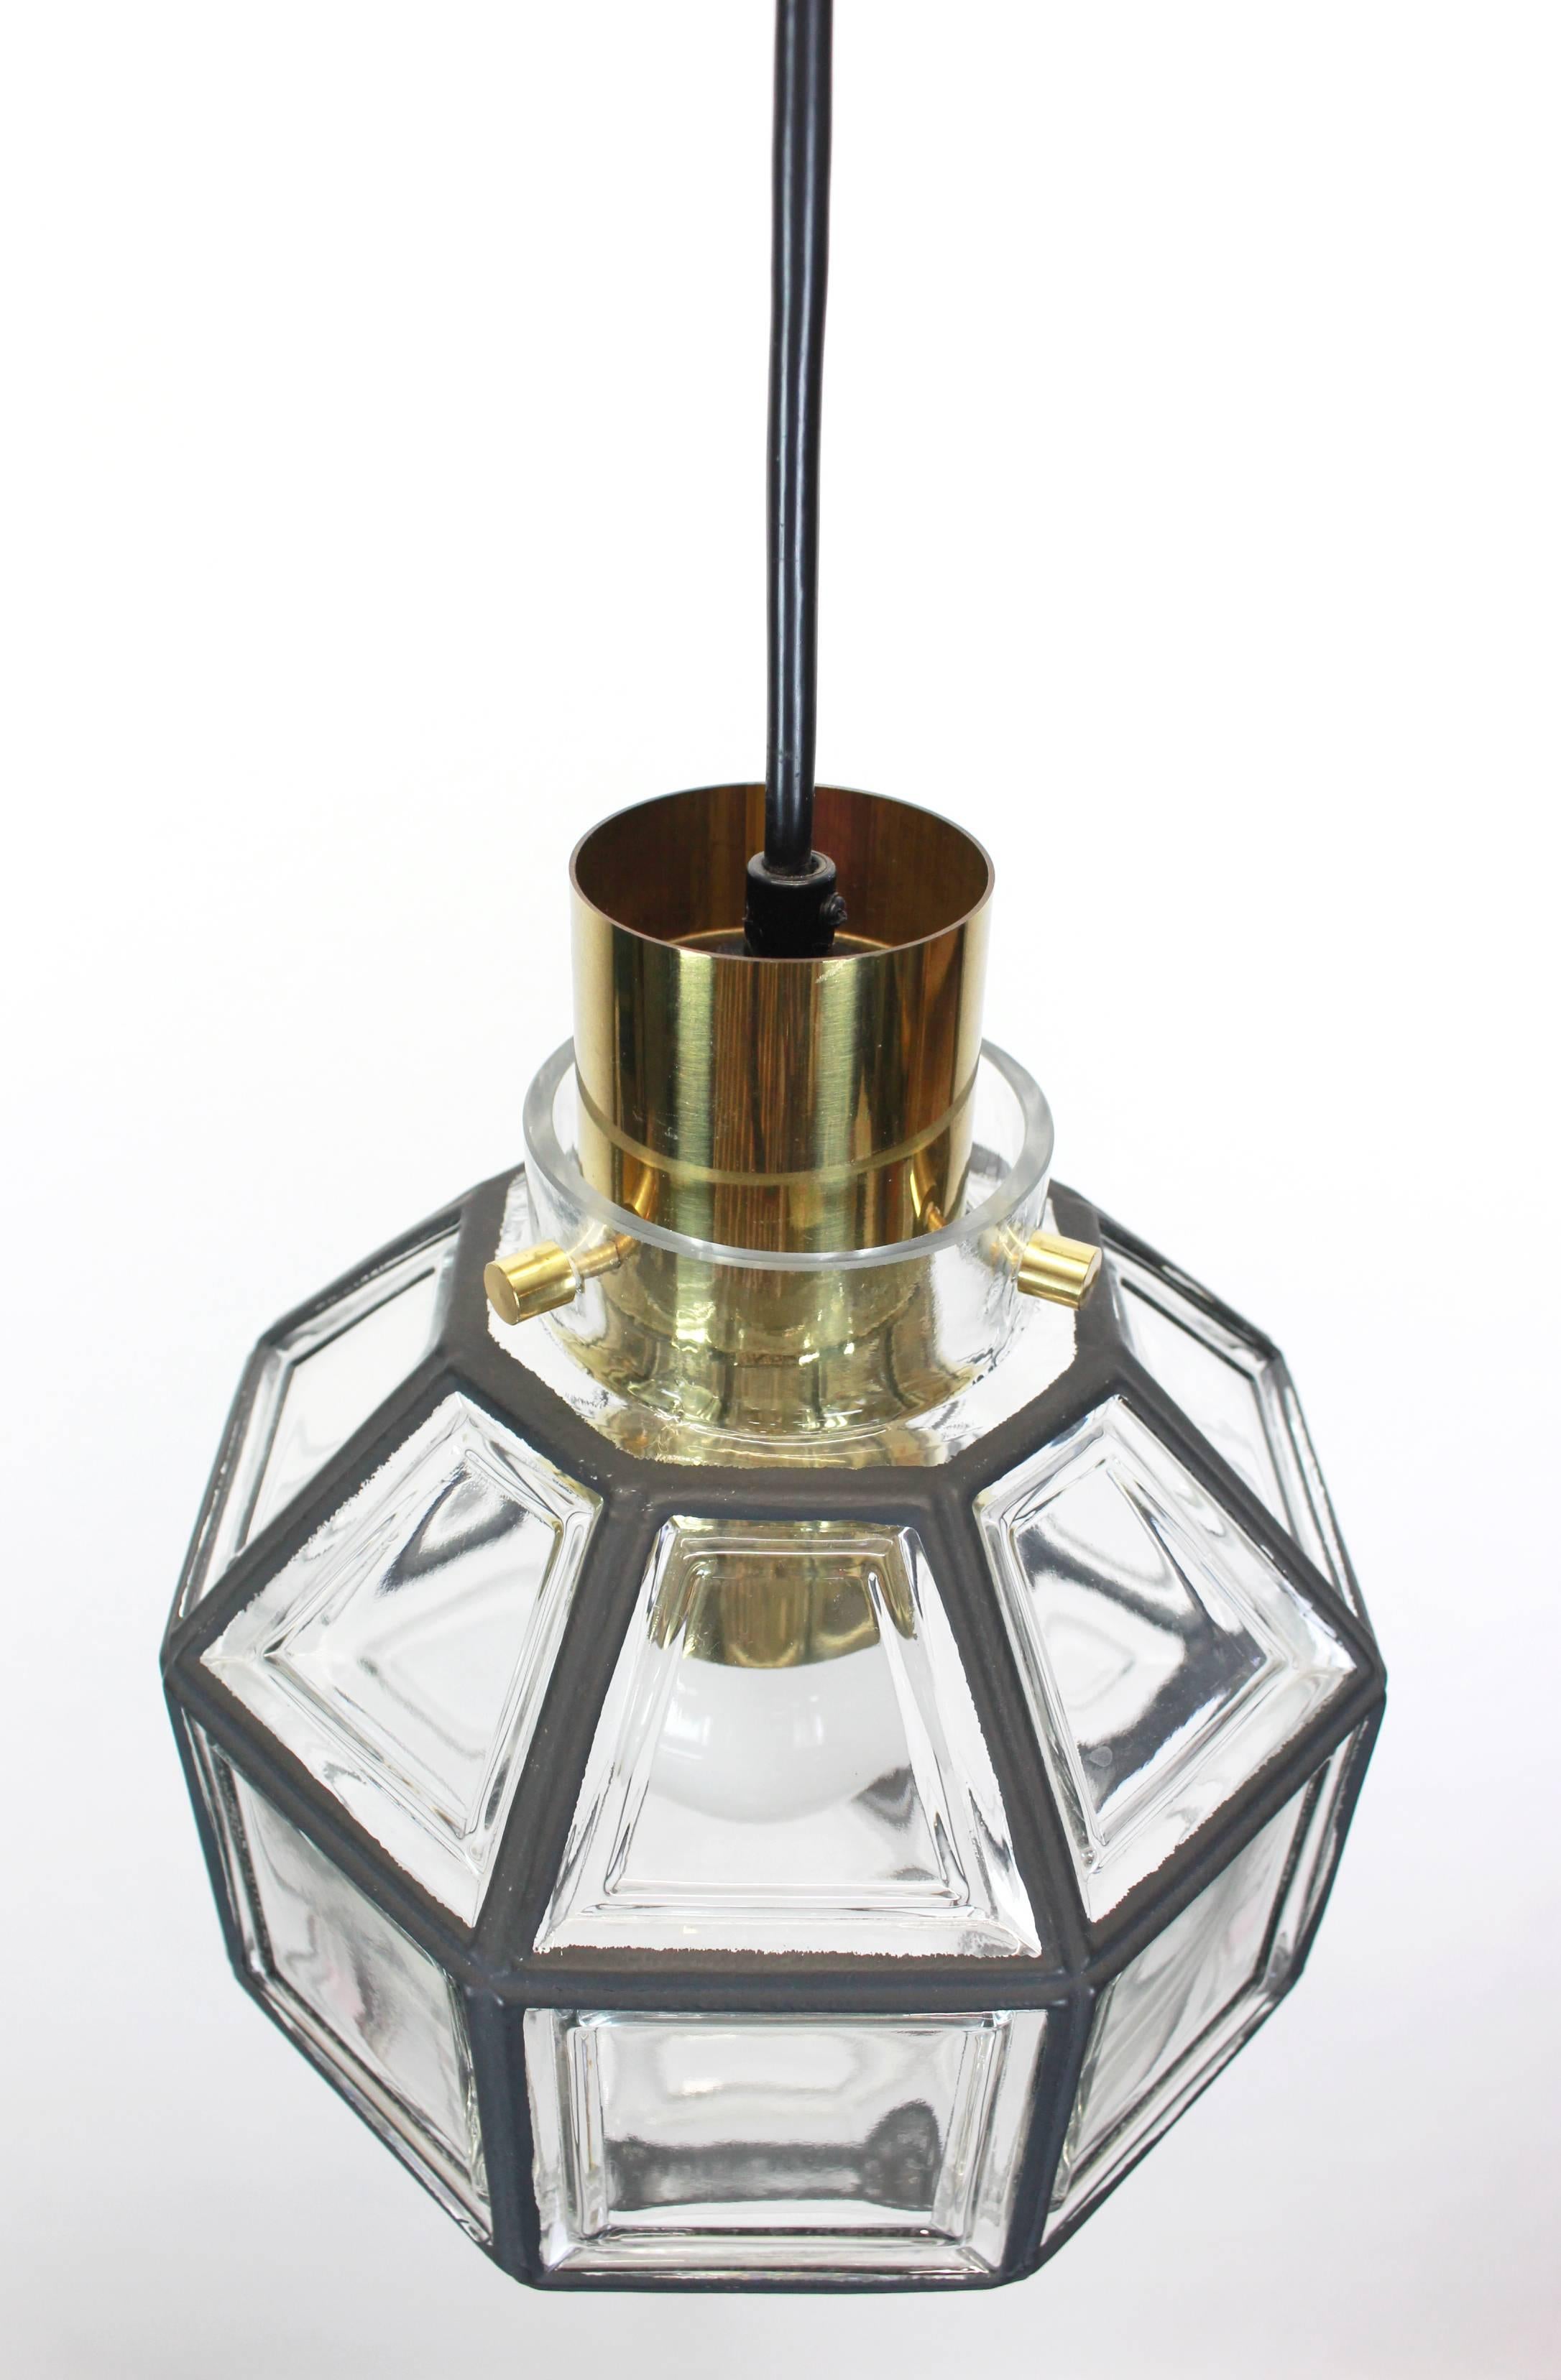 Lampe pendante minimaliste en fer et verre transparent fabriquée par Limburg Glashütte, Allemagne, vers 1960-1969. Lanterne de forme octogonale et verre transparent à facettes multiples.

De haute qualité et en très bon état. Nettoyé, bien câblé